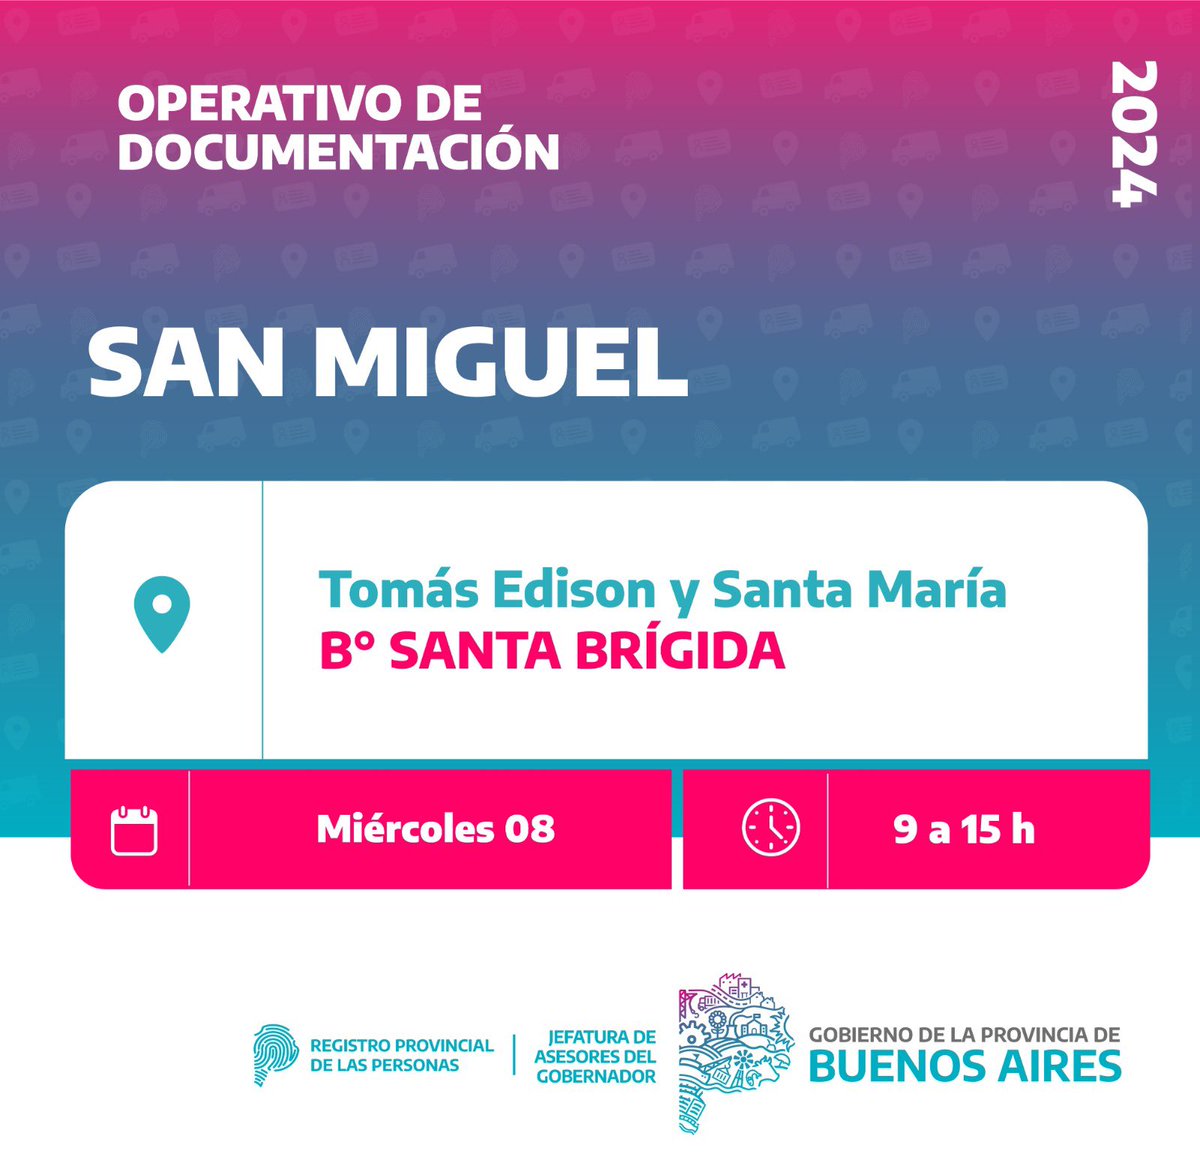 Llegamos con nuestros operativos documentarios 🚐 a #SanMiguel

➡️ Enterate dónde encontrarnos 😉